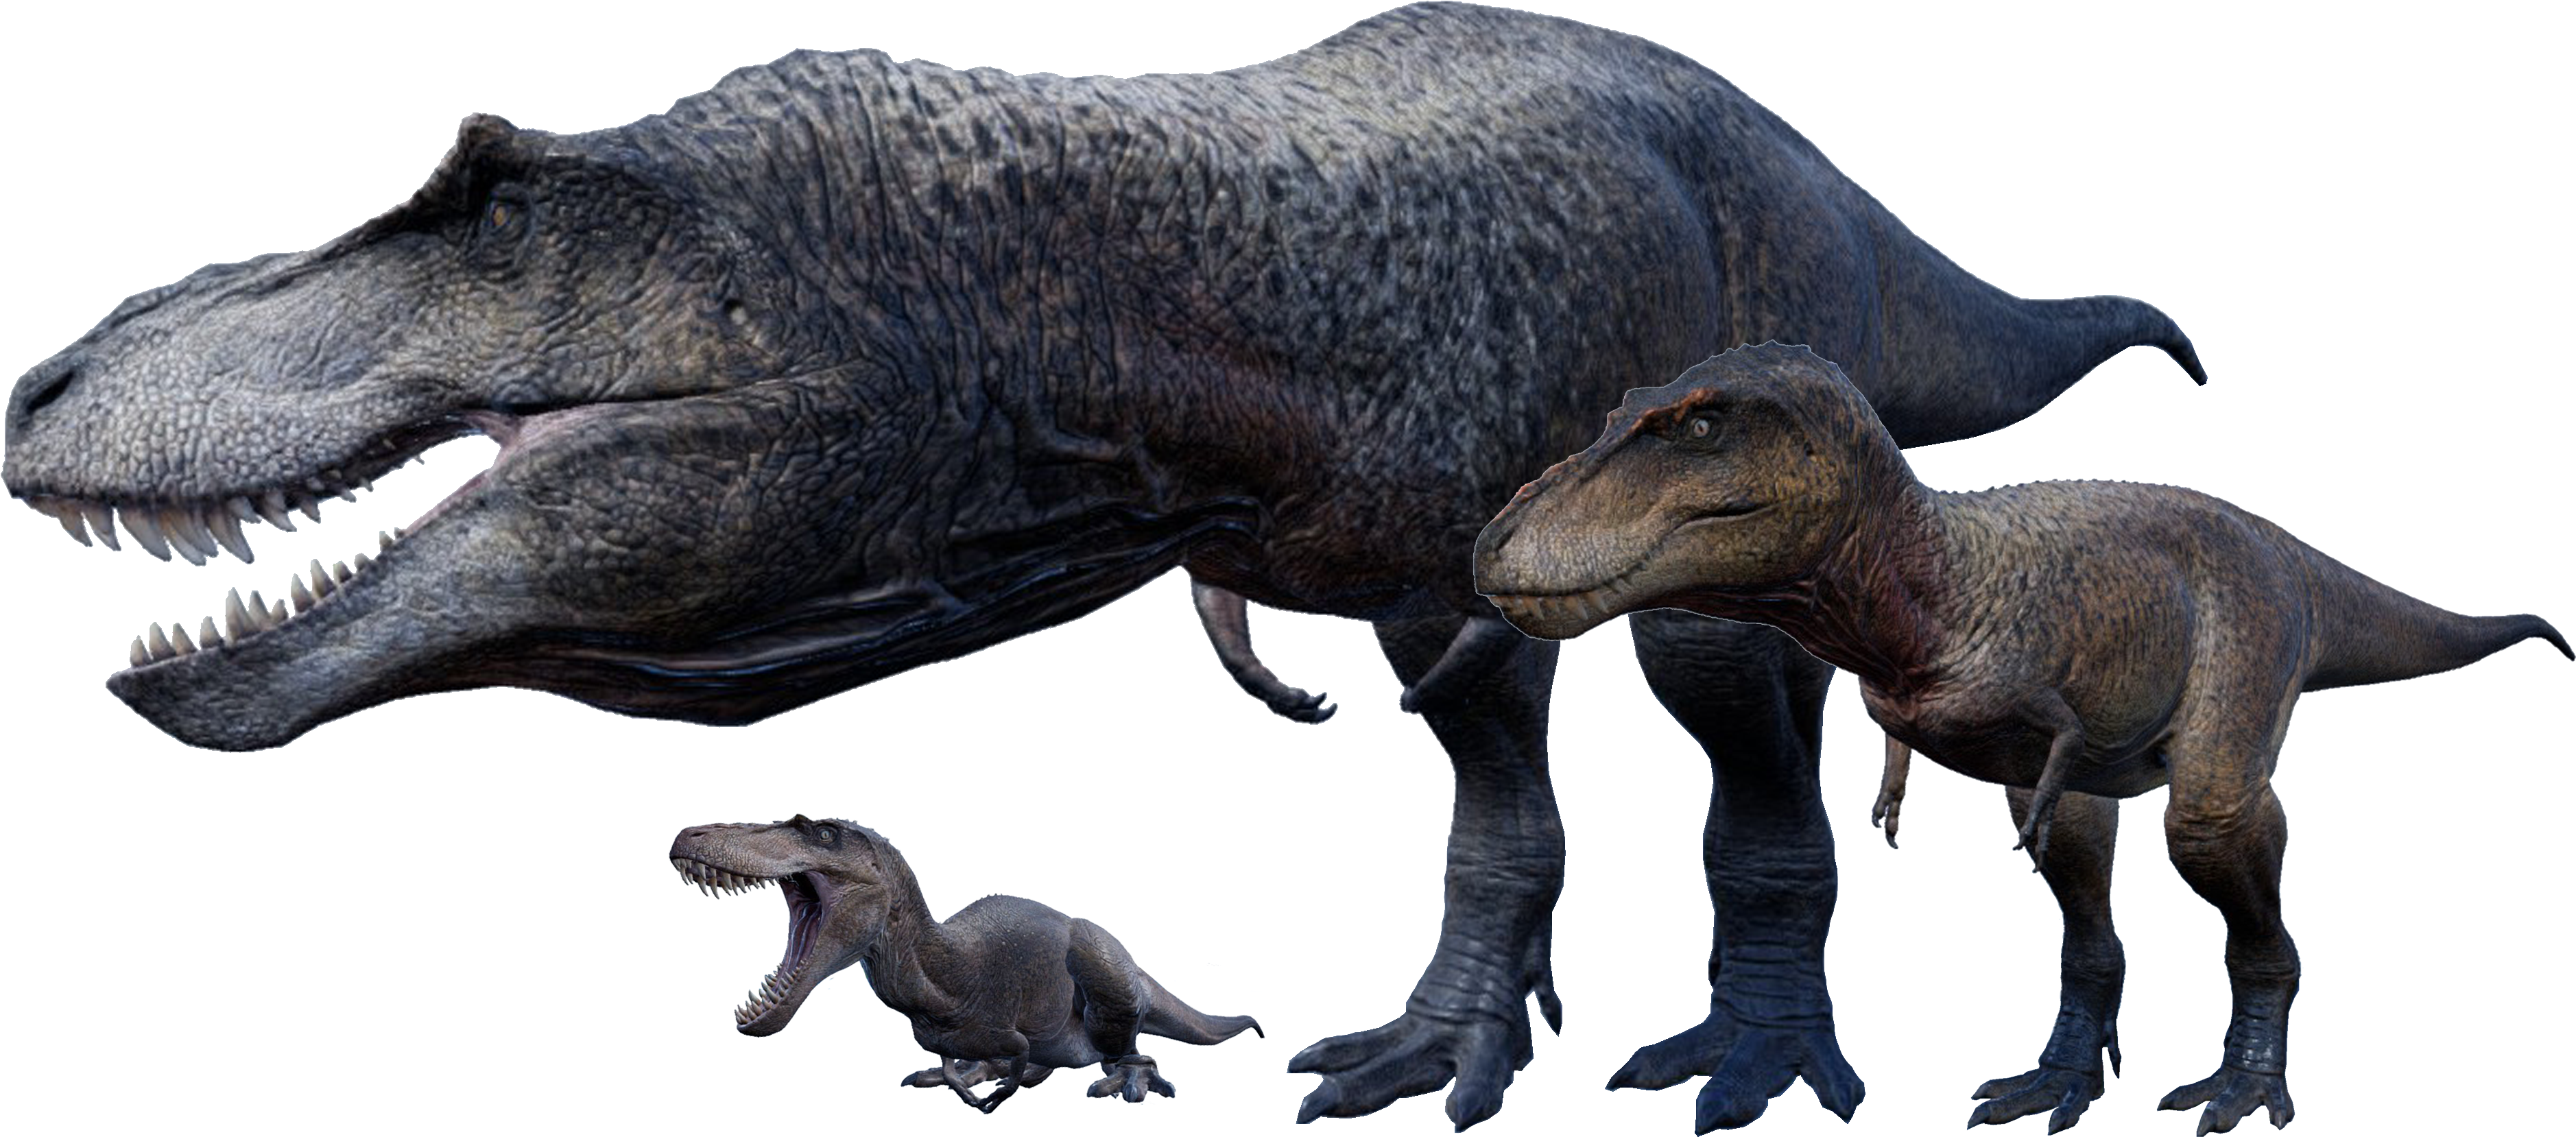 A Dinosaur And A Baby Dinosaur